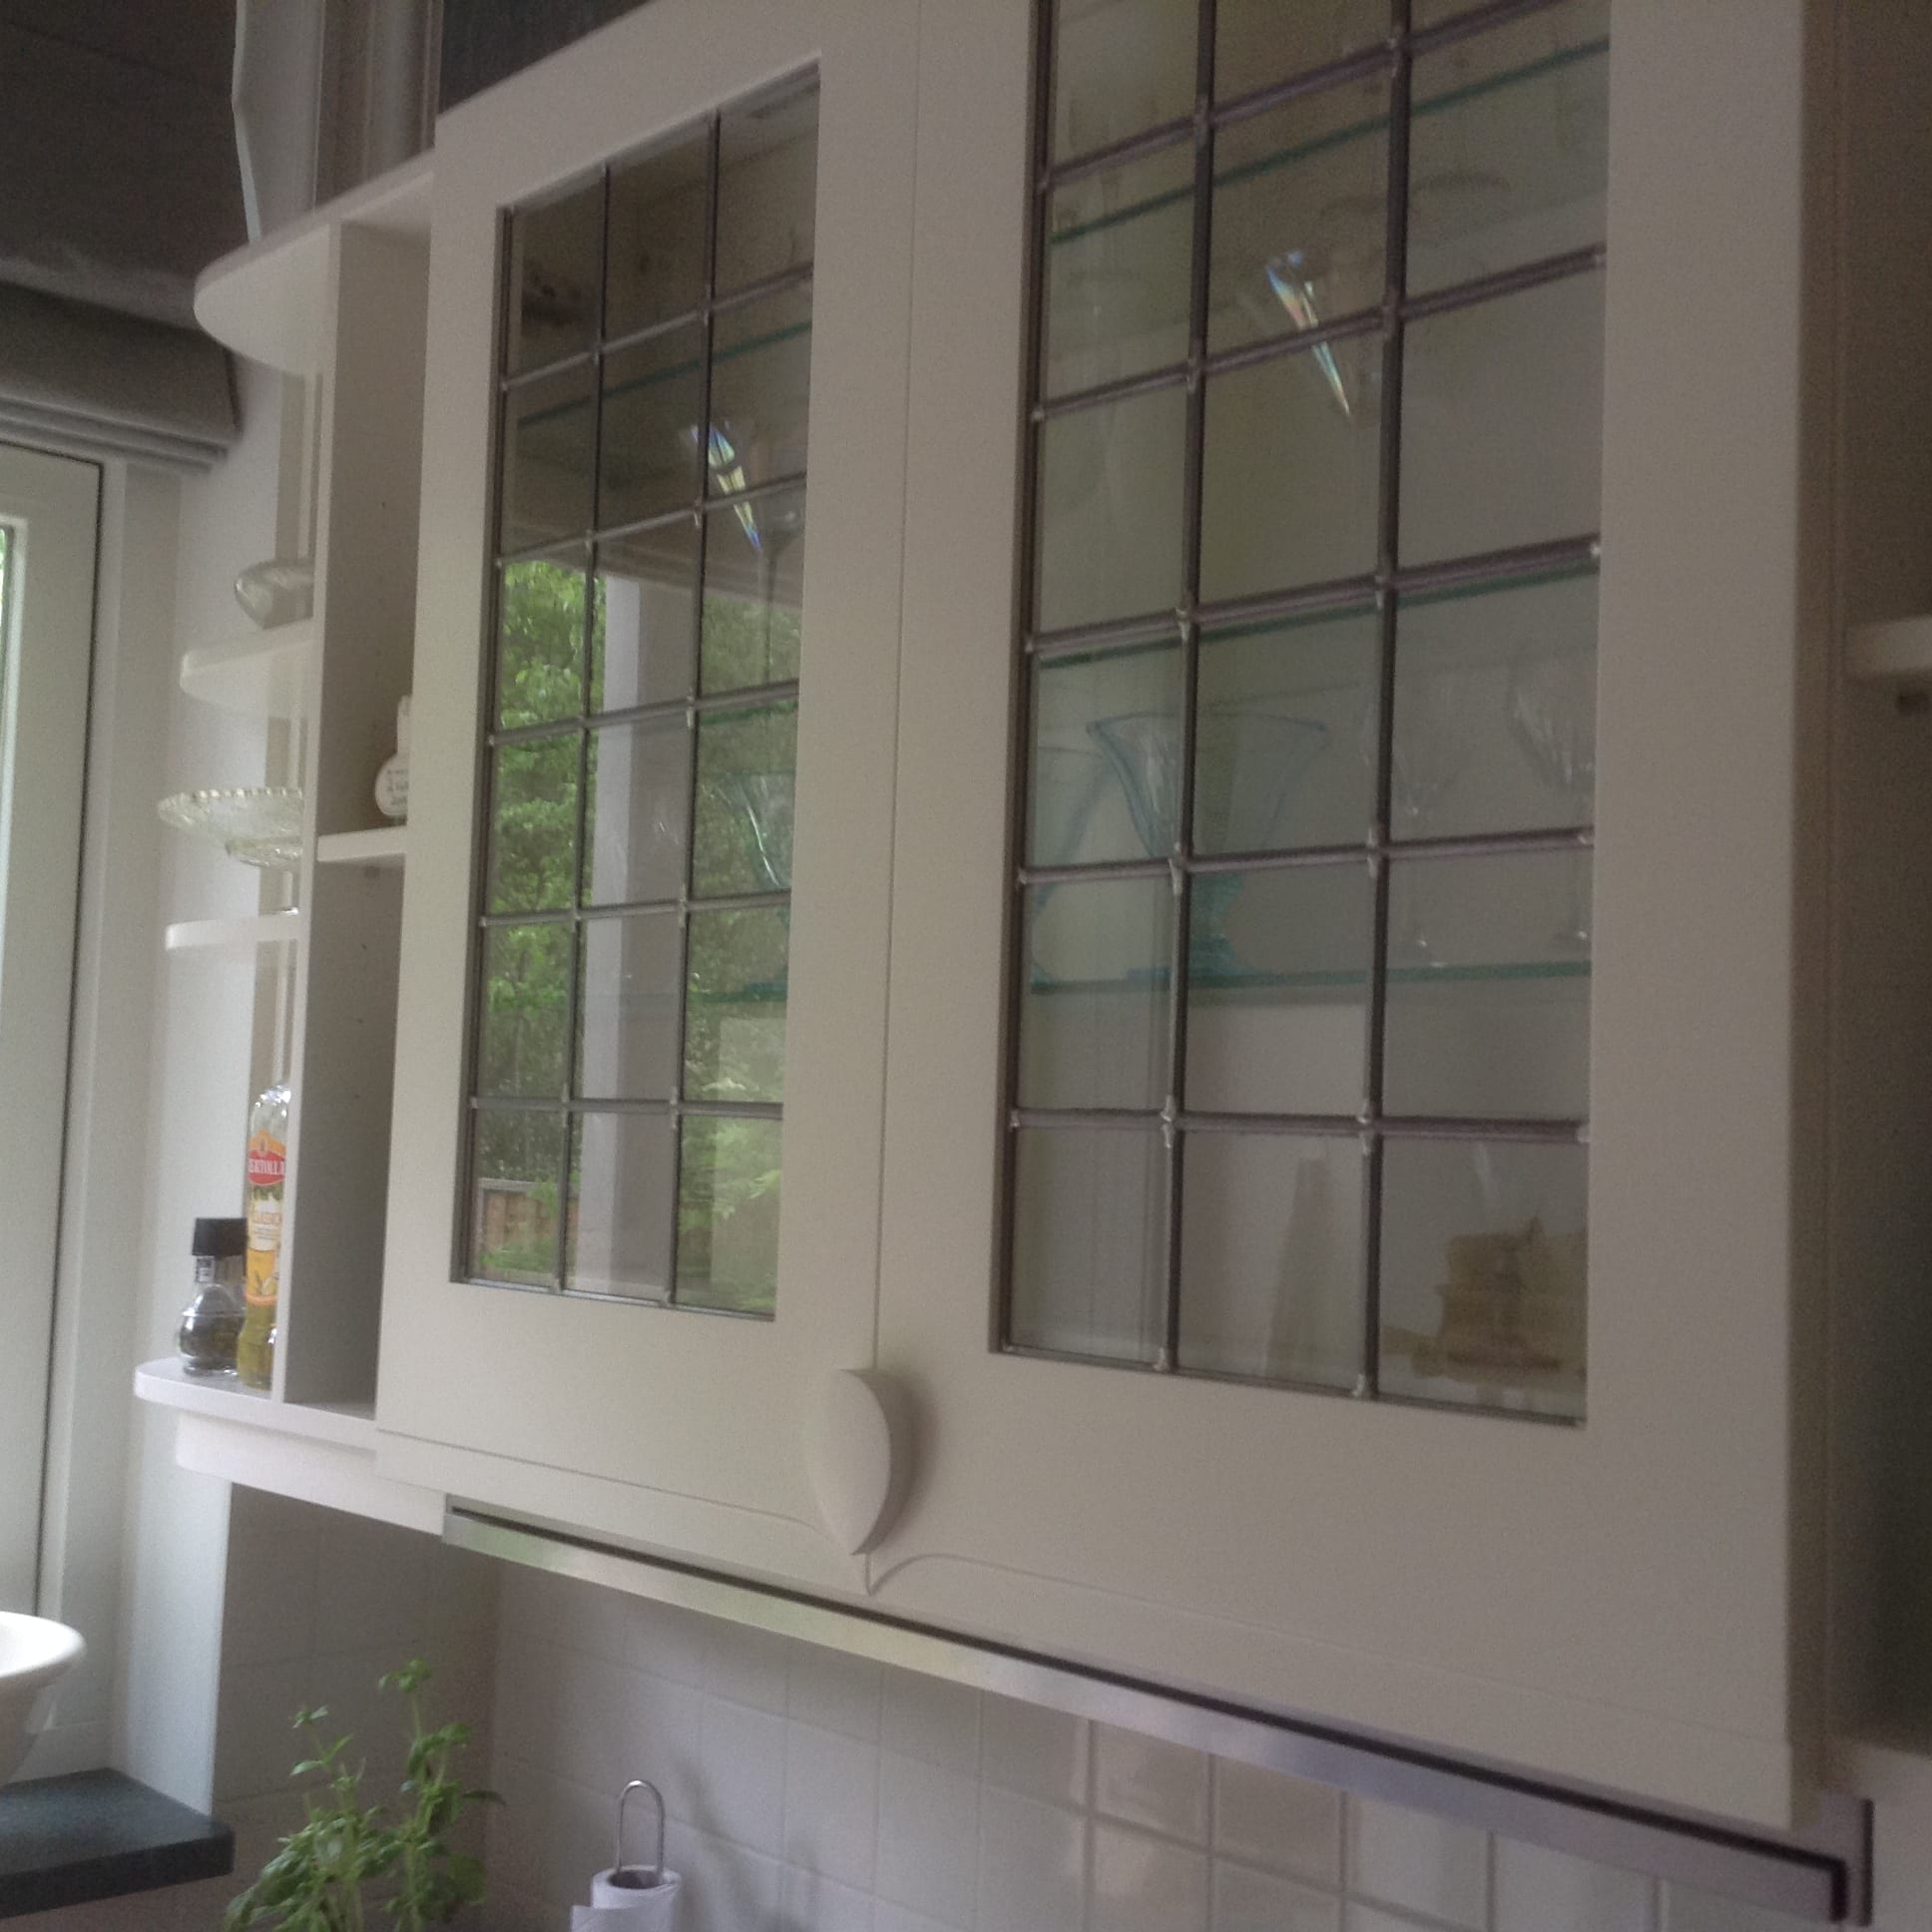 baden Openlijk Verwaand Mackintosh witte keuken 6 bovenkastjes glas in lood - Meubelatelier Momentum